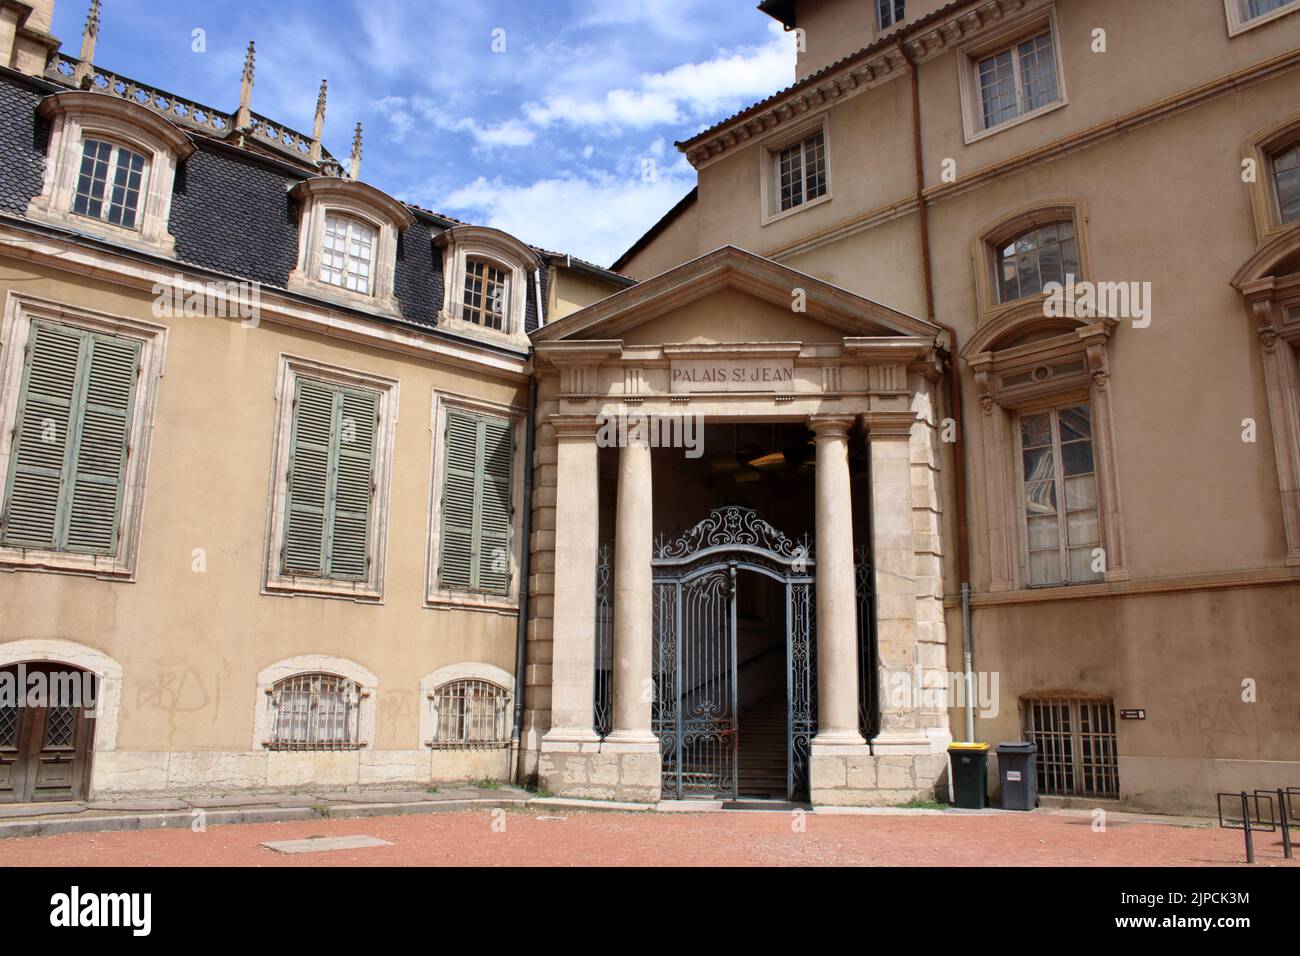 Un des portiques monumentaux du célèbre Palais St Jean situé dans la ville de Lyon France. Banque D'Images